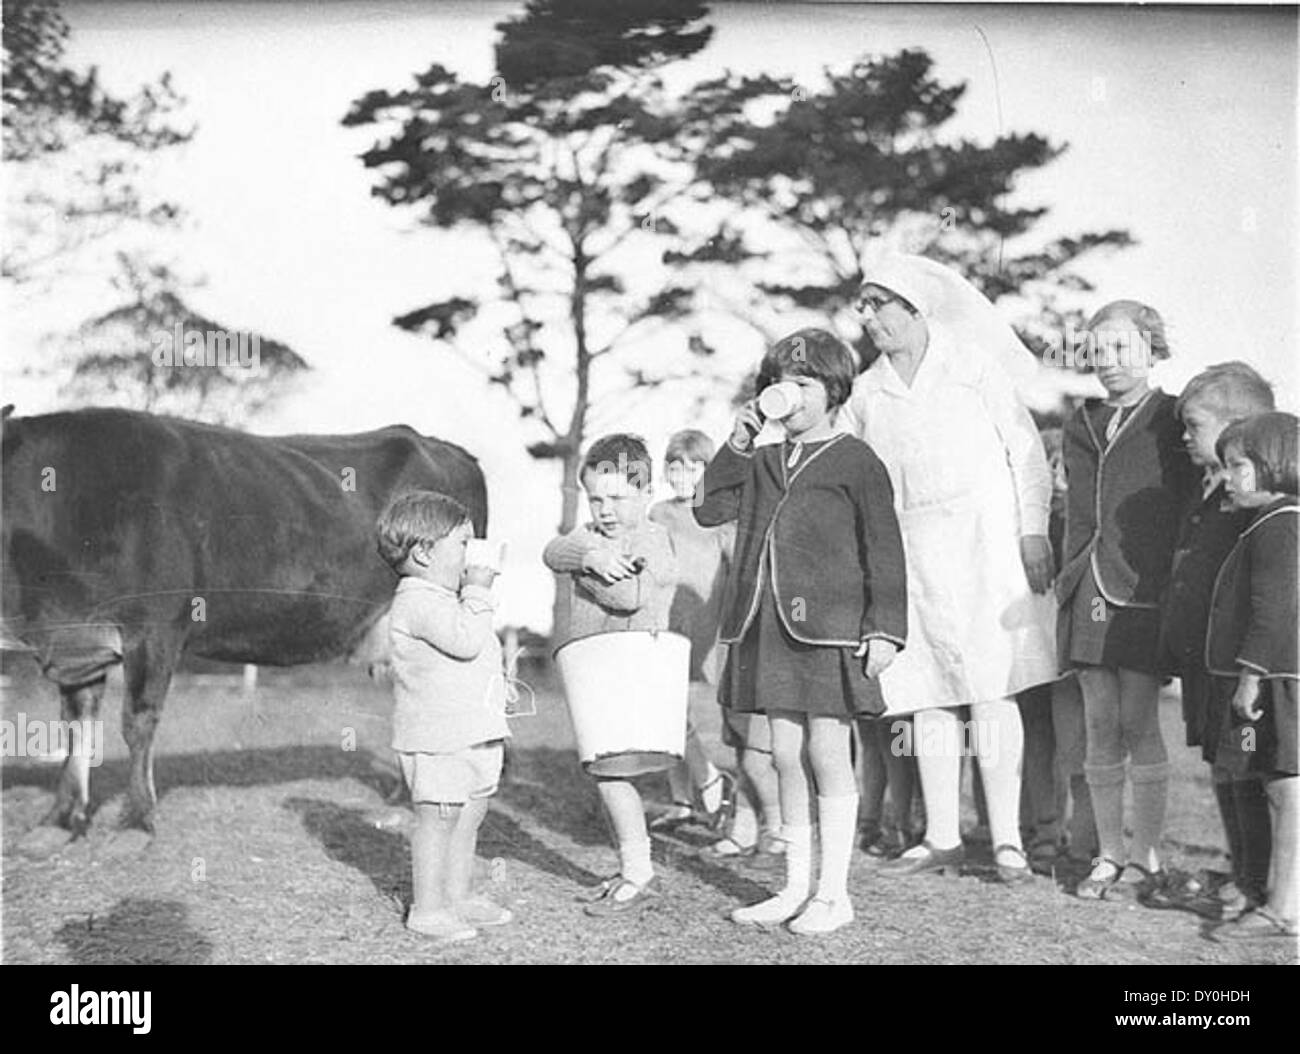 Как жили дети в 1930 годы. Австралийское детство. Мое австралийское детство. Фото австралийских волонтеров в начале 20 века.